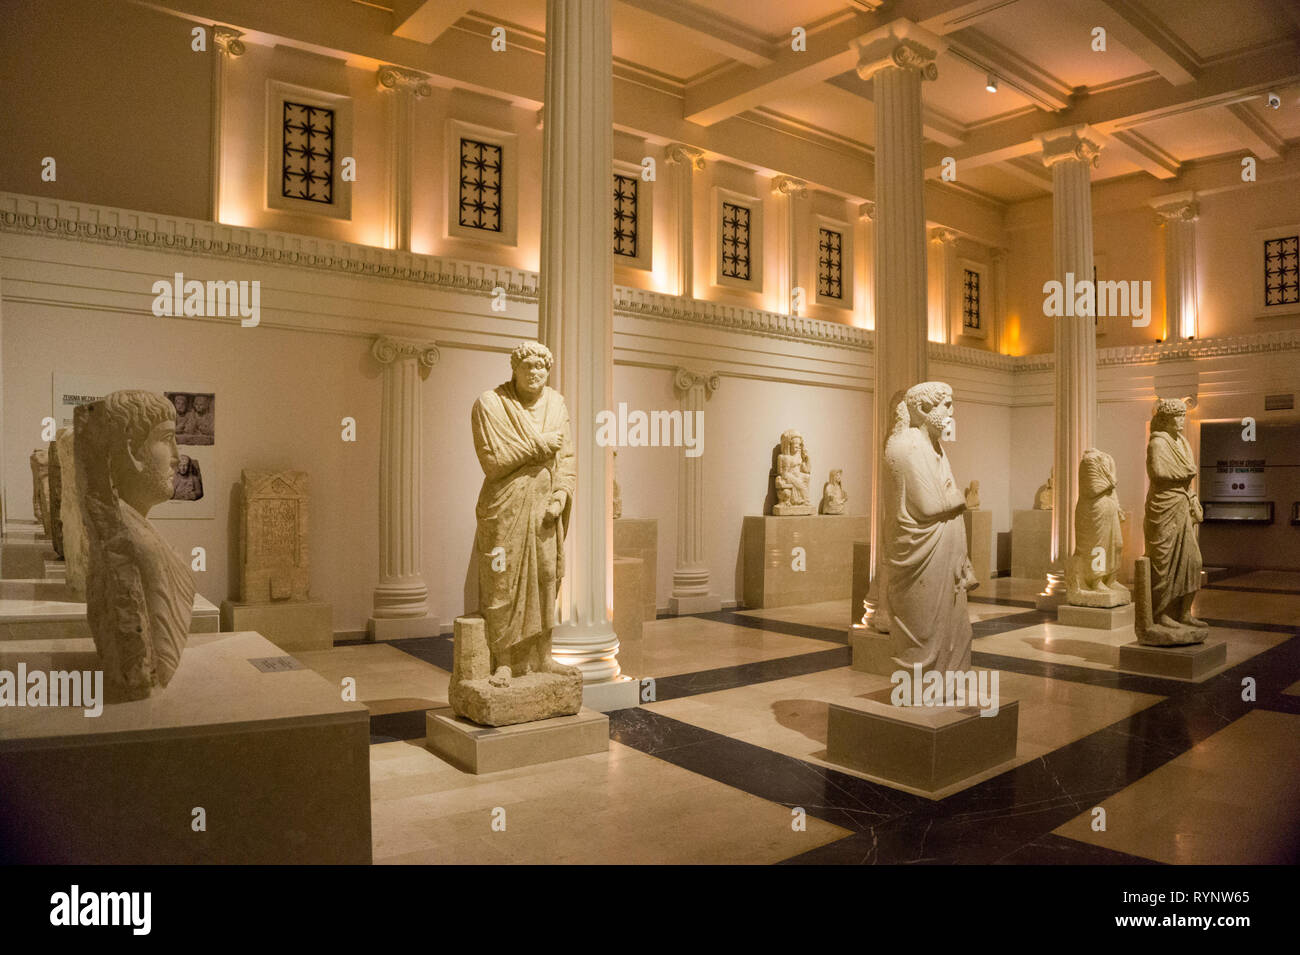 Des statues de la période romaine, musée de Gaziantep Turquie Banque D'Images